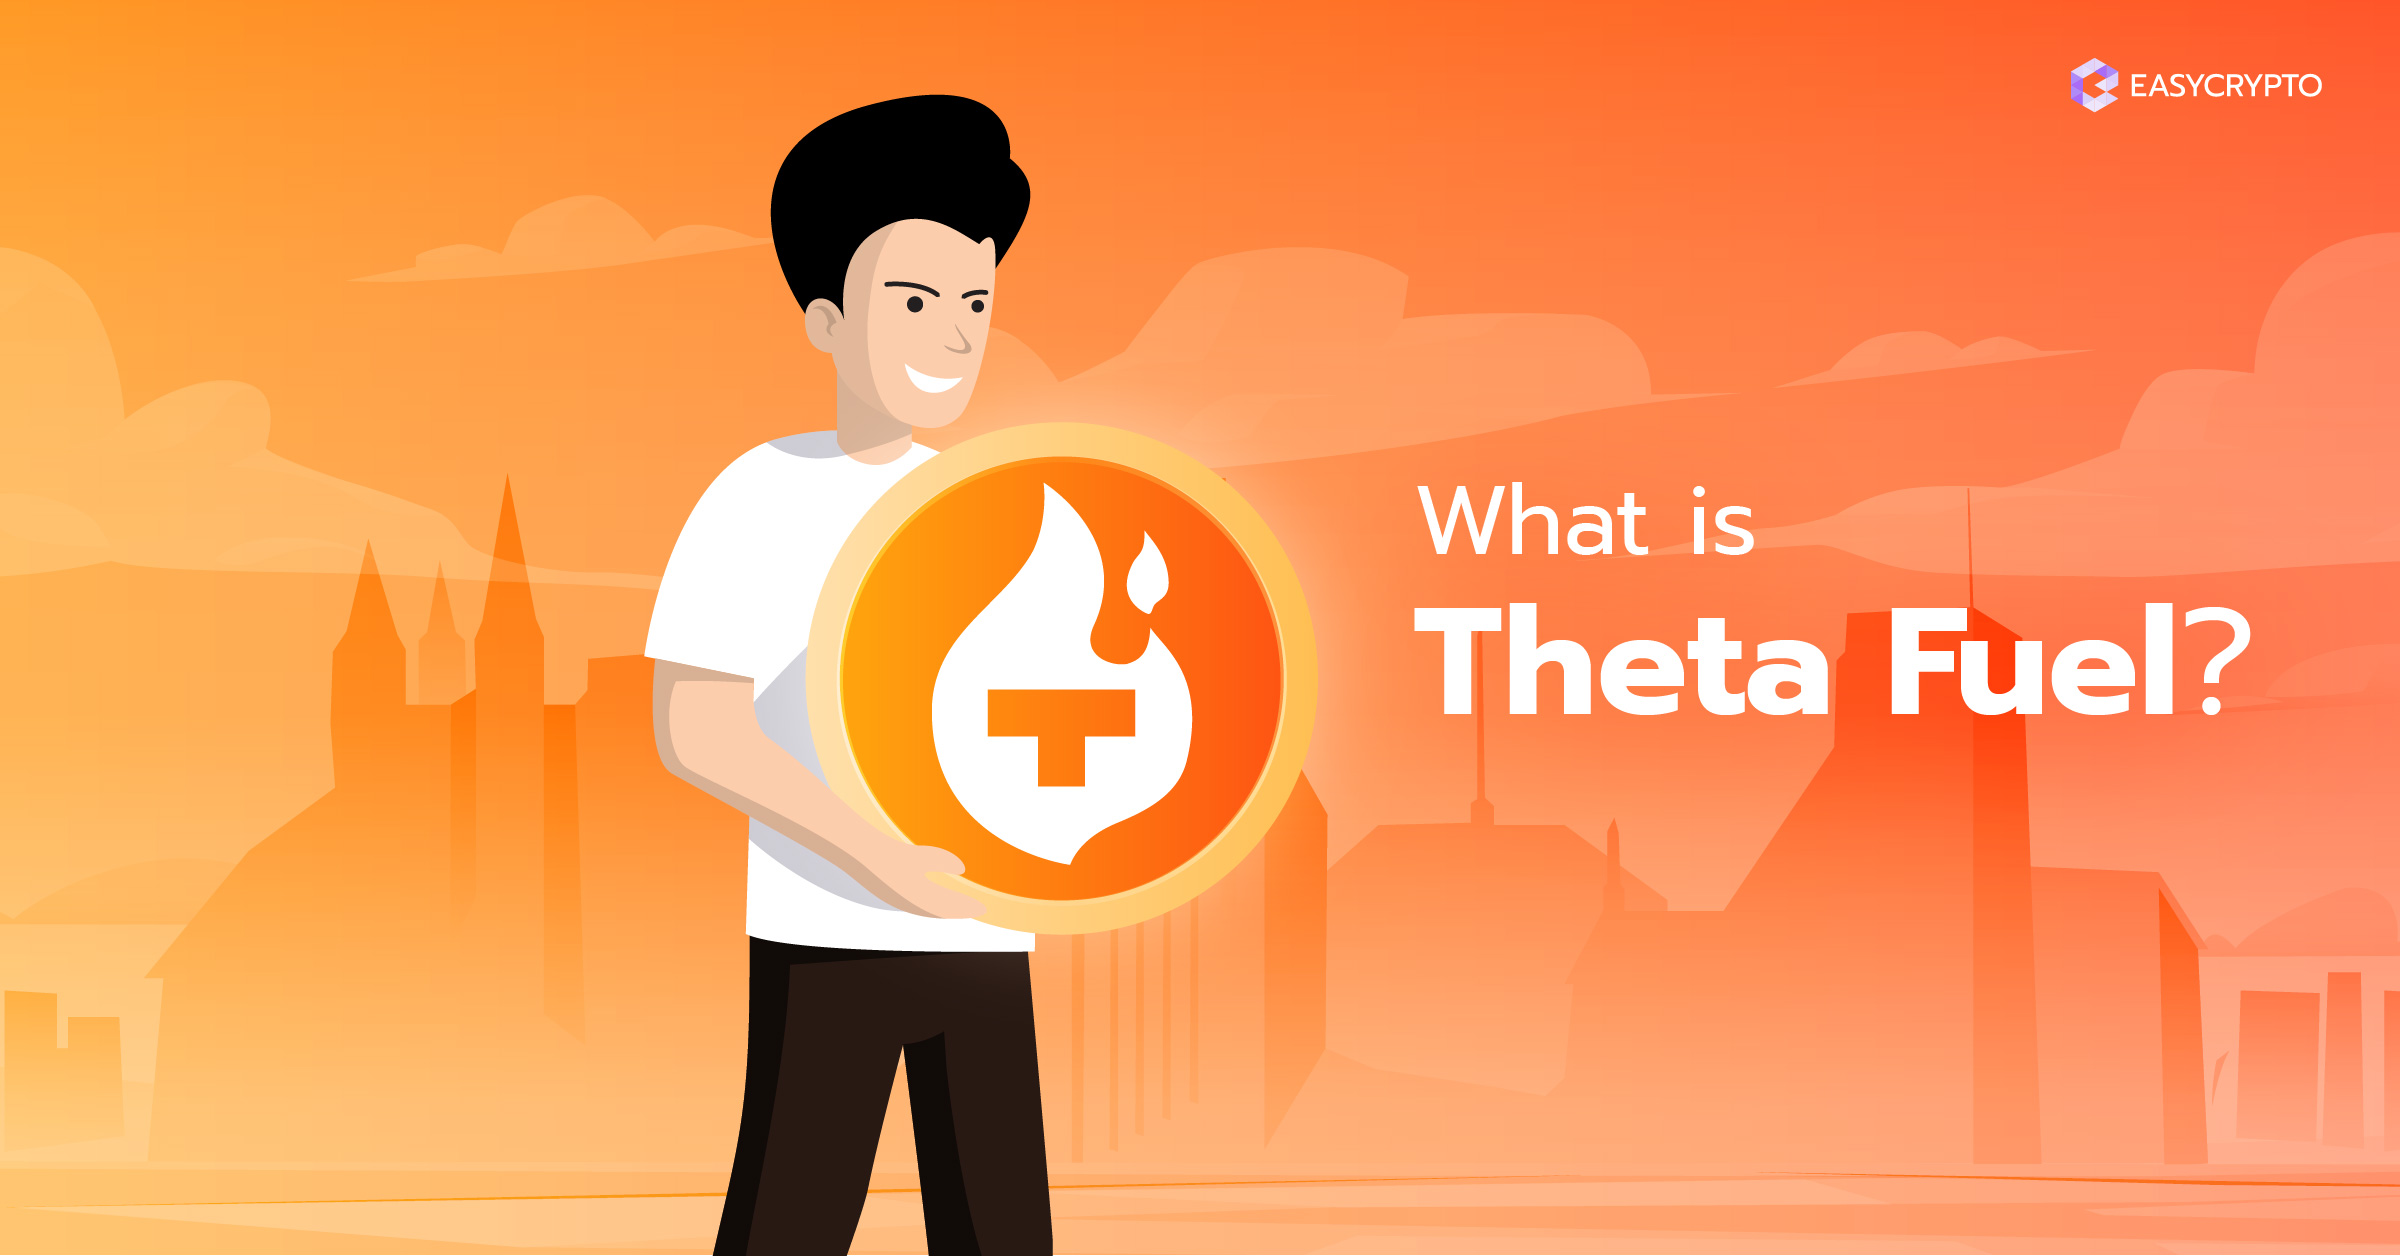 ارز دیجیتال تتا فیول (Theta Fuel) - TFUEL چیست؟